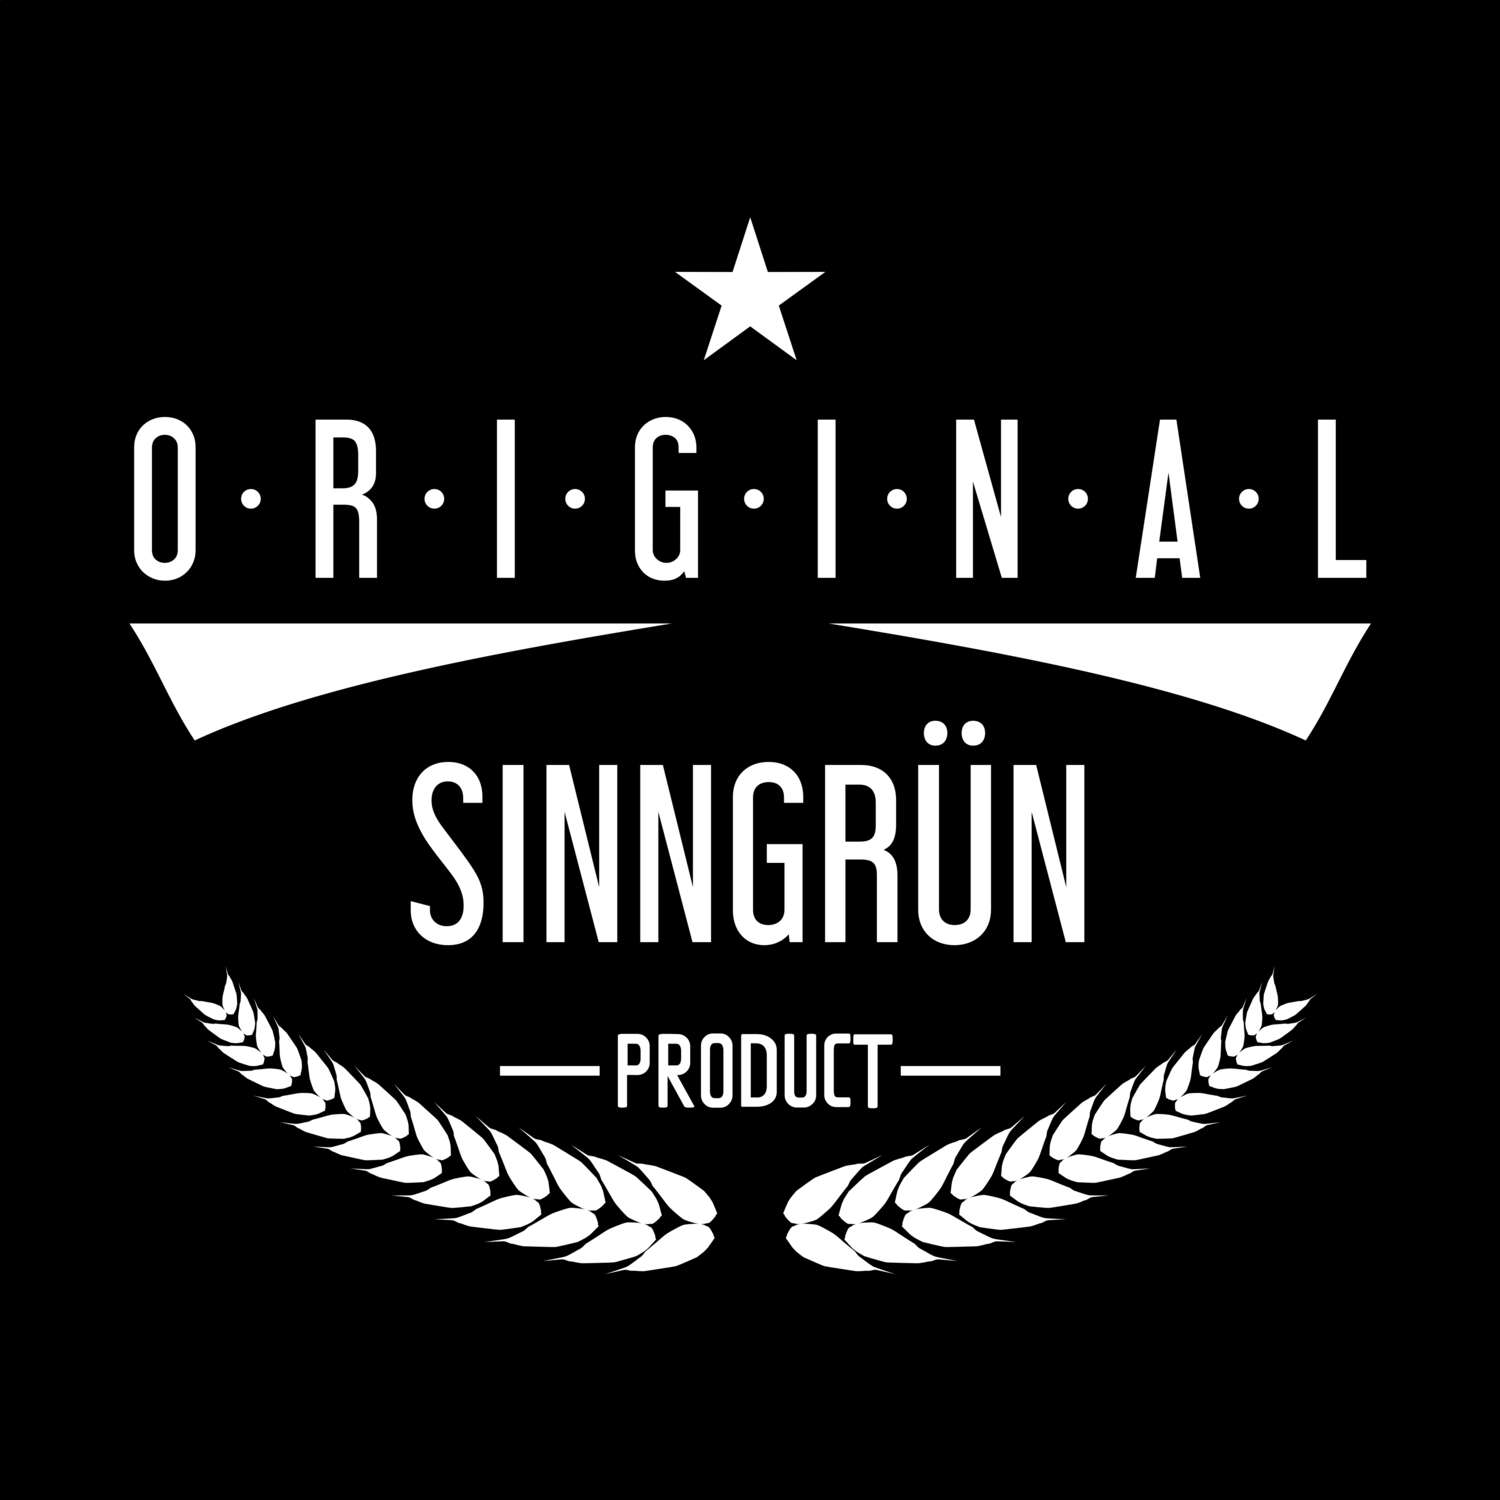 Sinngrün T-Shirt »Original Product«